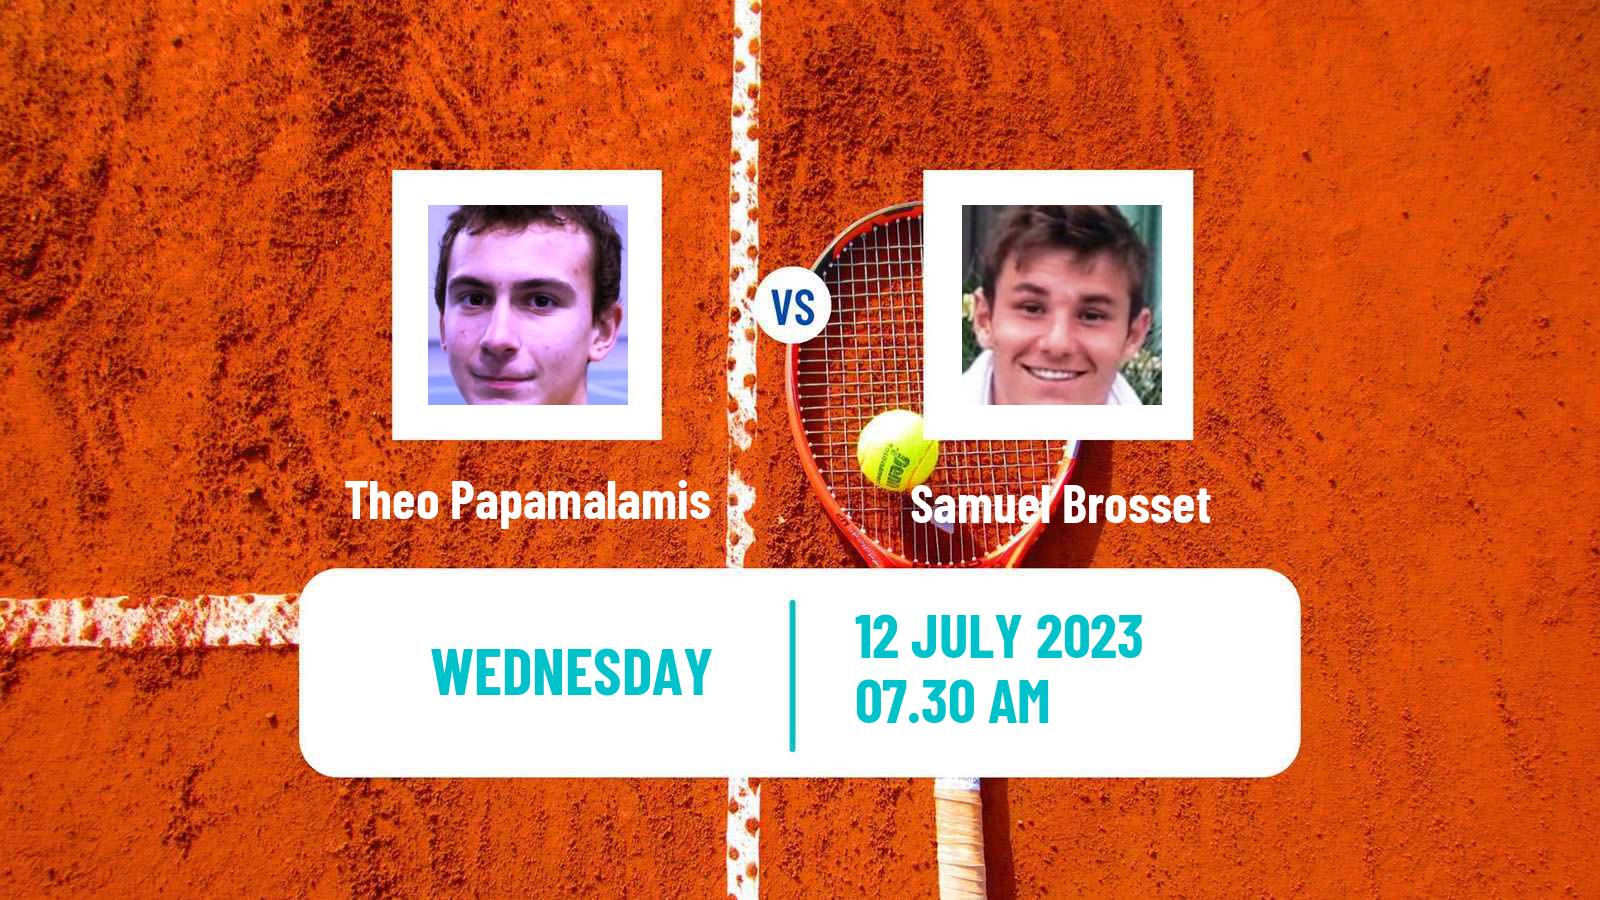 Tennis ITF M25 Esch Alzette Men Theo Papamalamis - Samuel Brosset